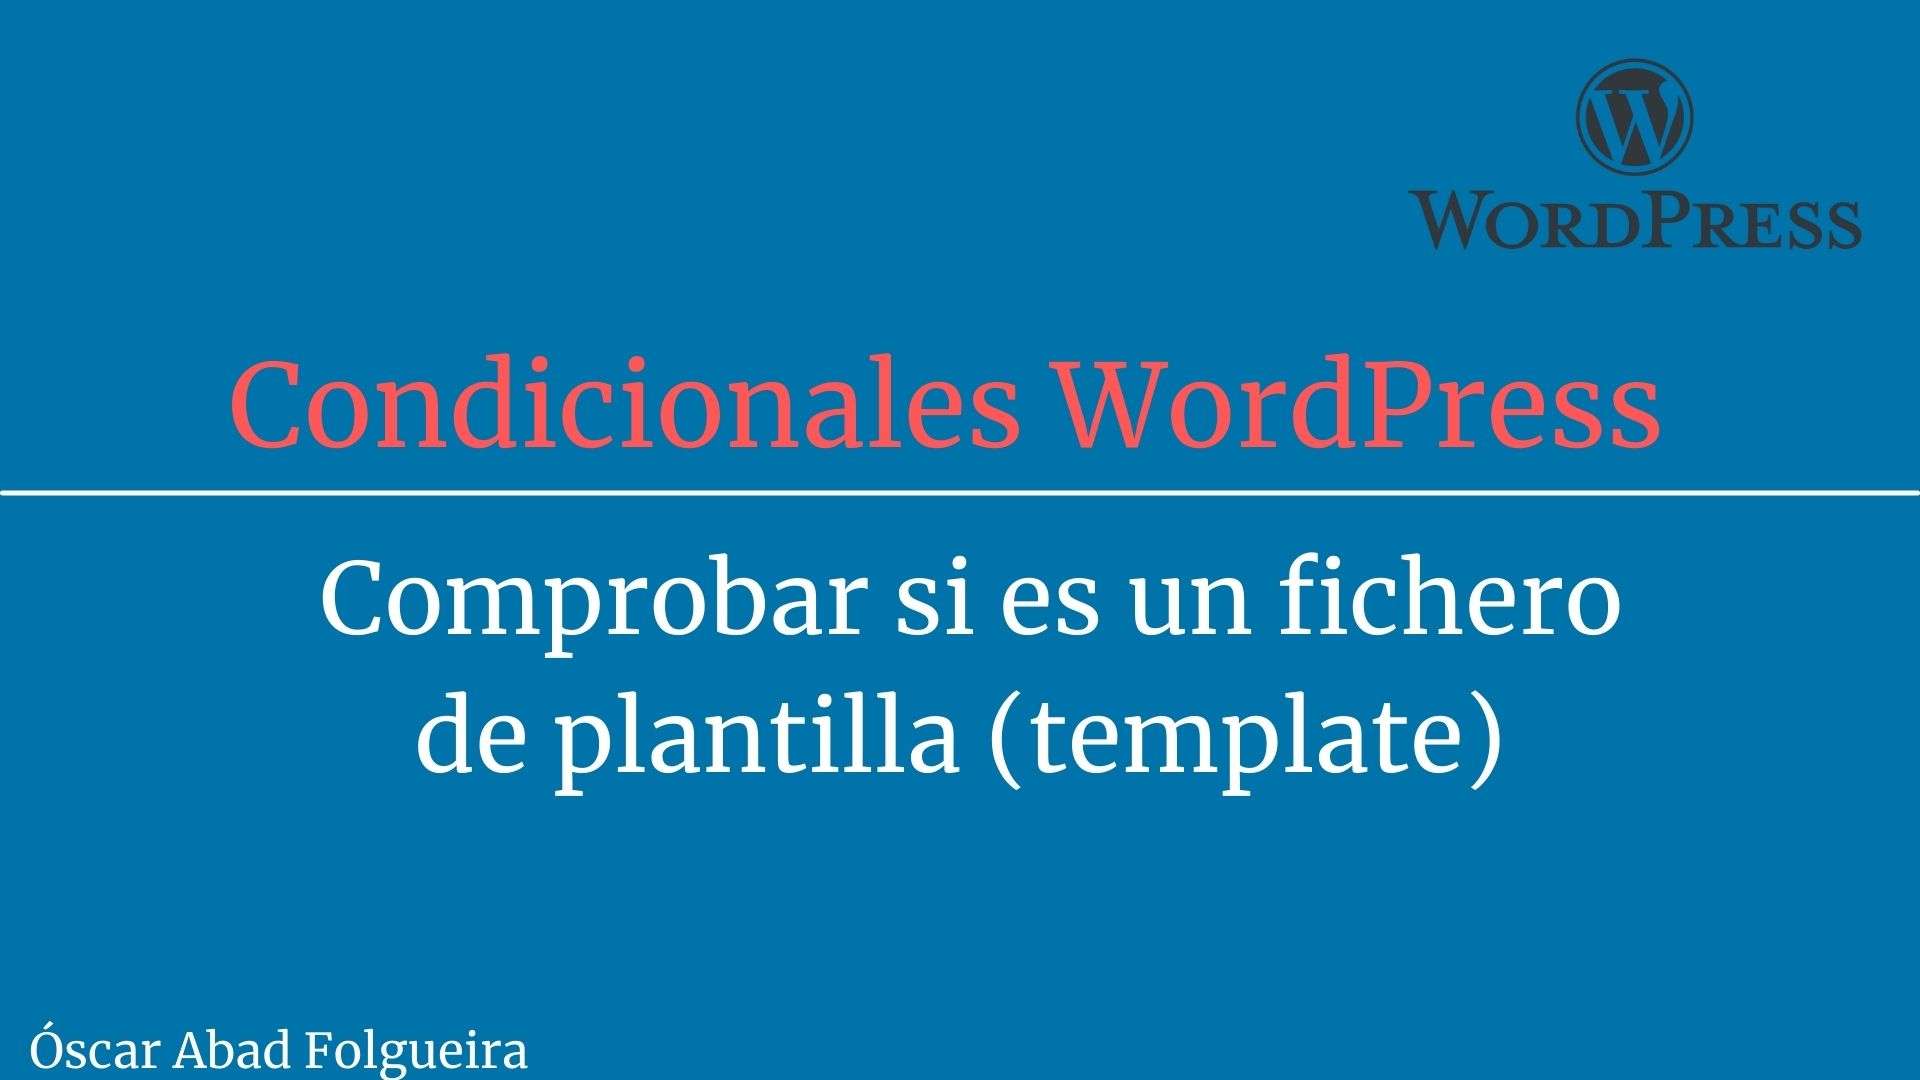 Condicionales WordPress: Comprobar si es un fichero de plantilla - template